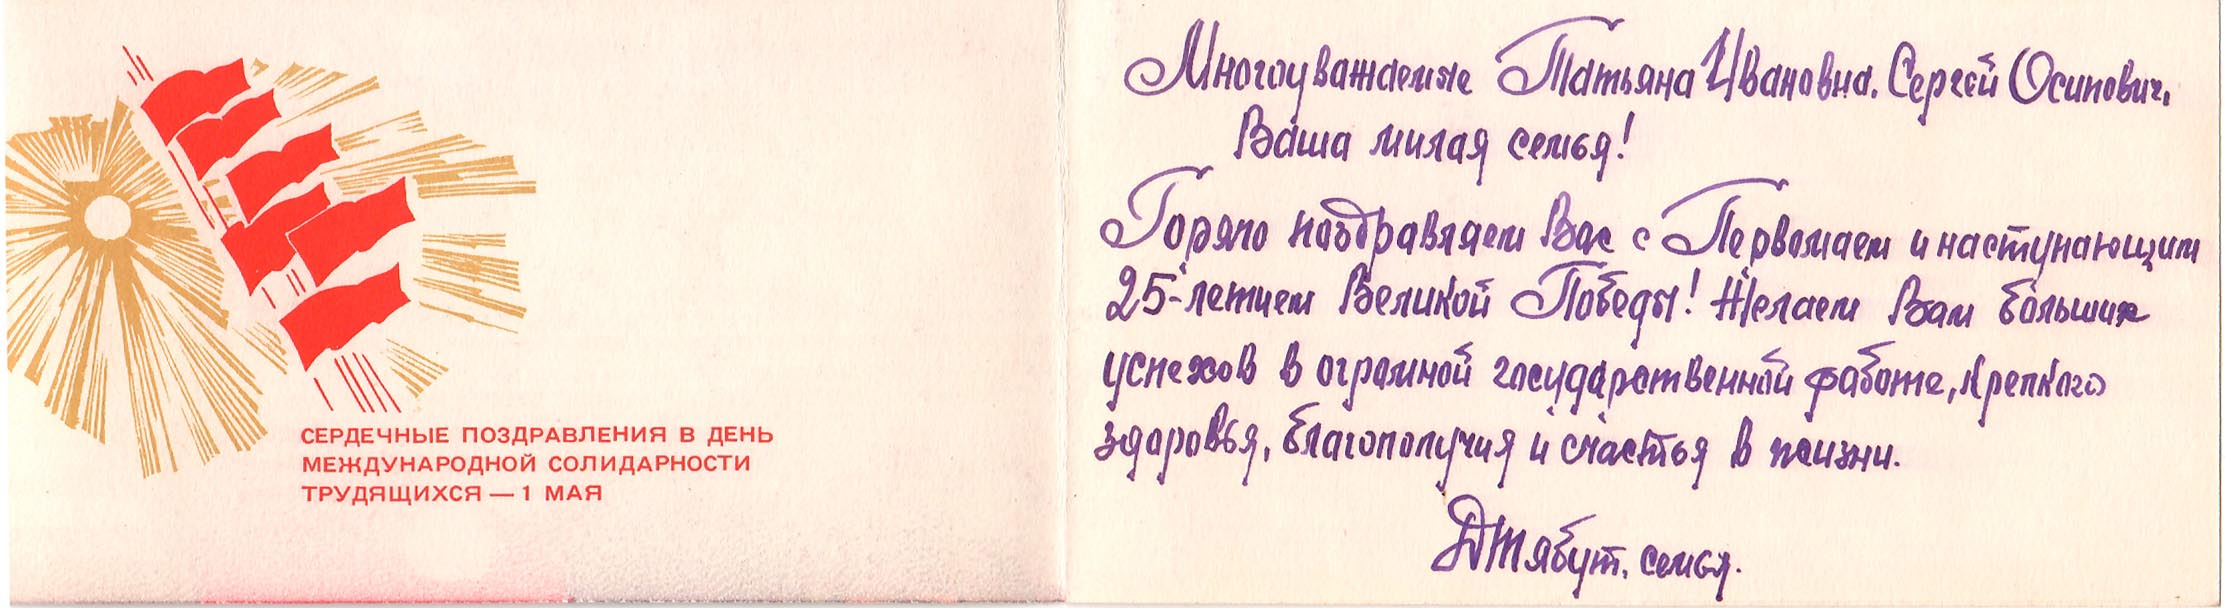 Открытка, подписанная Дмитрием Васильевичем Тябутом